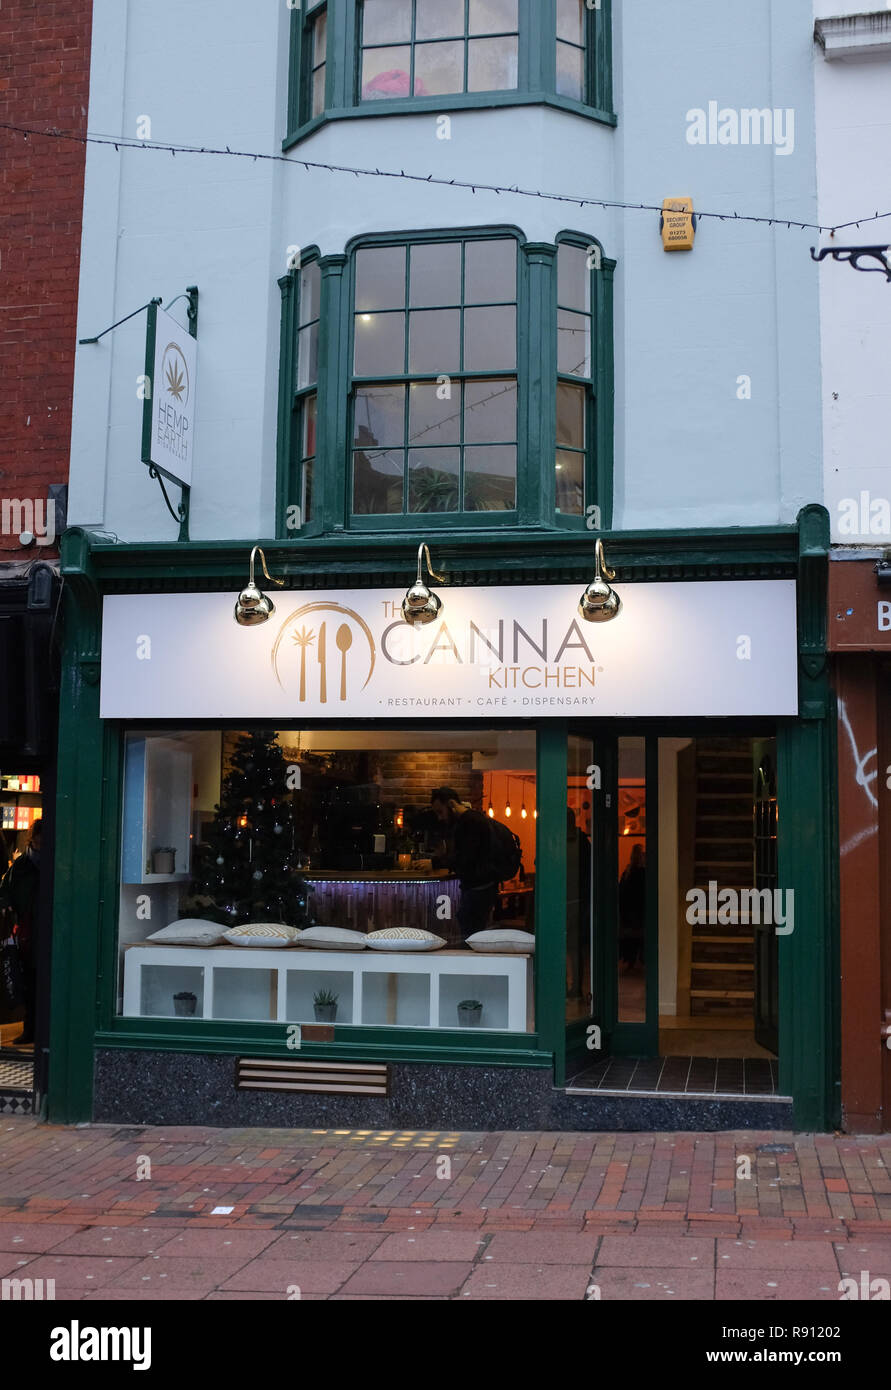 La cuisine dans Dukes Canna Street Brighton un thème cannabis restaurant servant des plats végétariens et végétaliens avec infusion de cannabinoïdes. Prendre la photo Banque D'Images